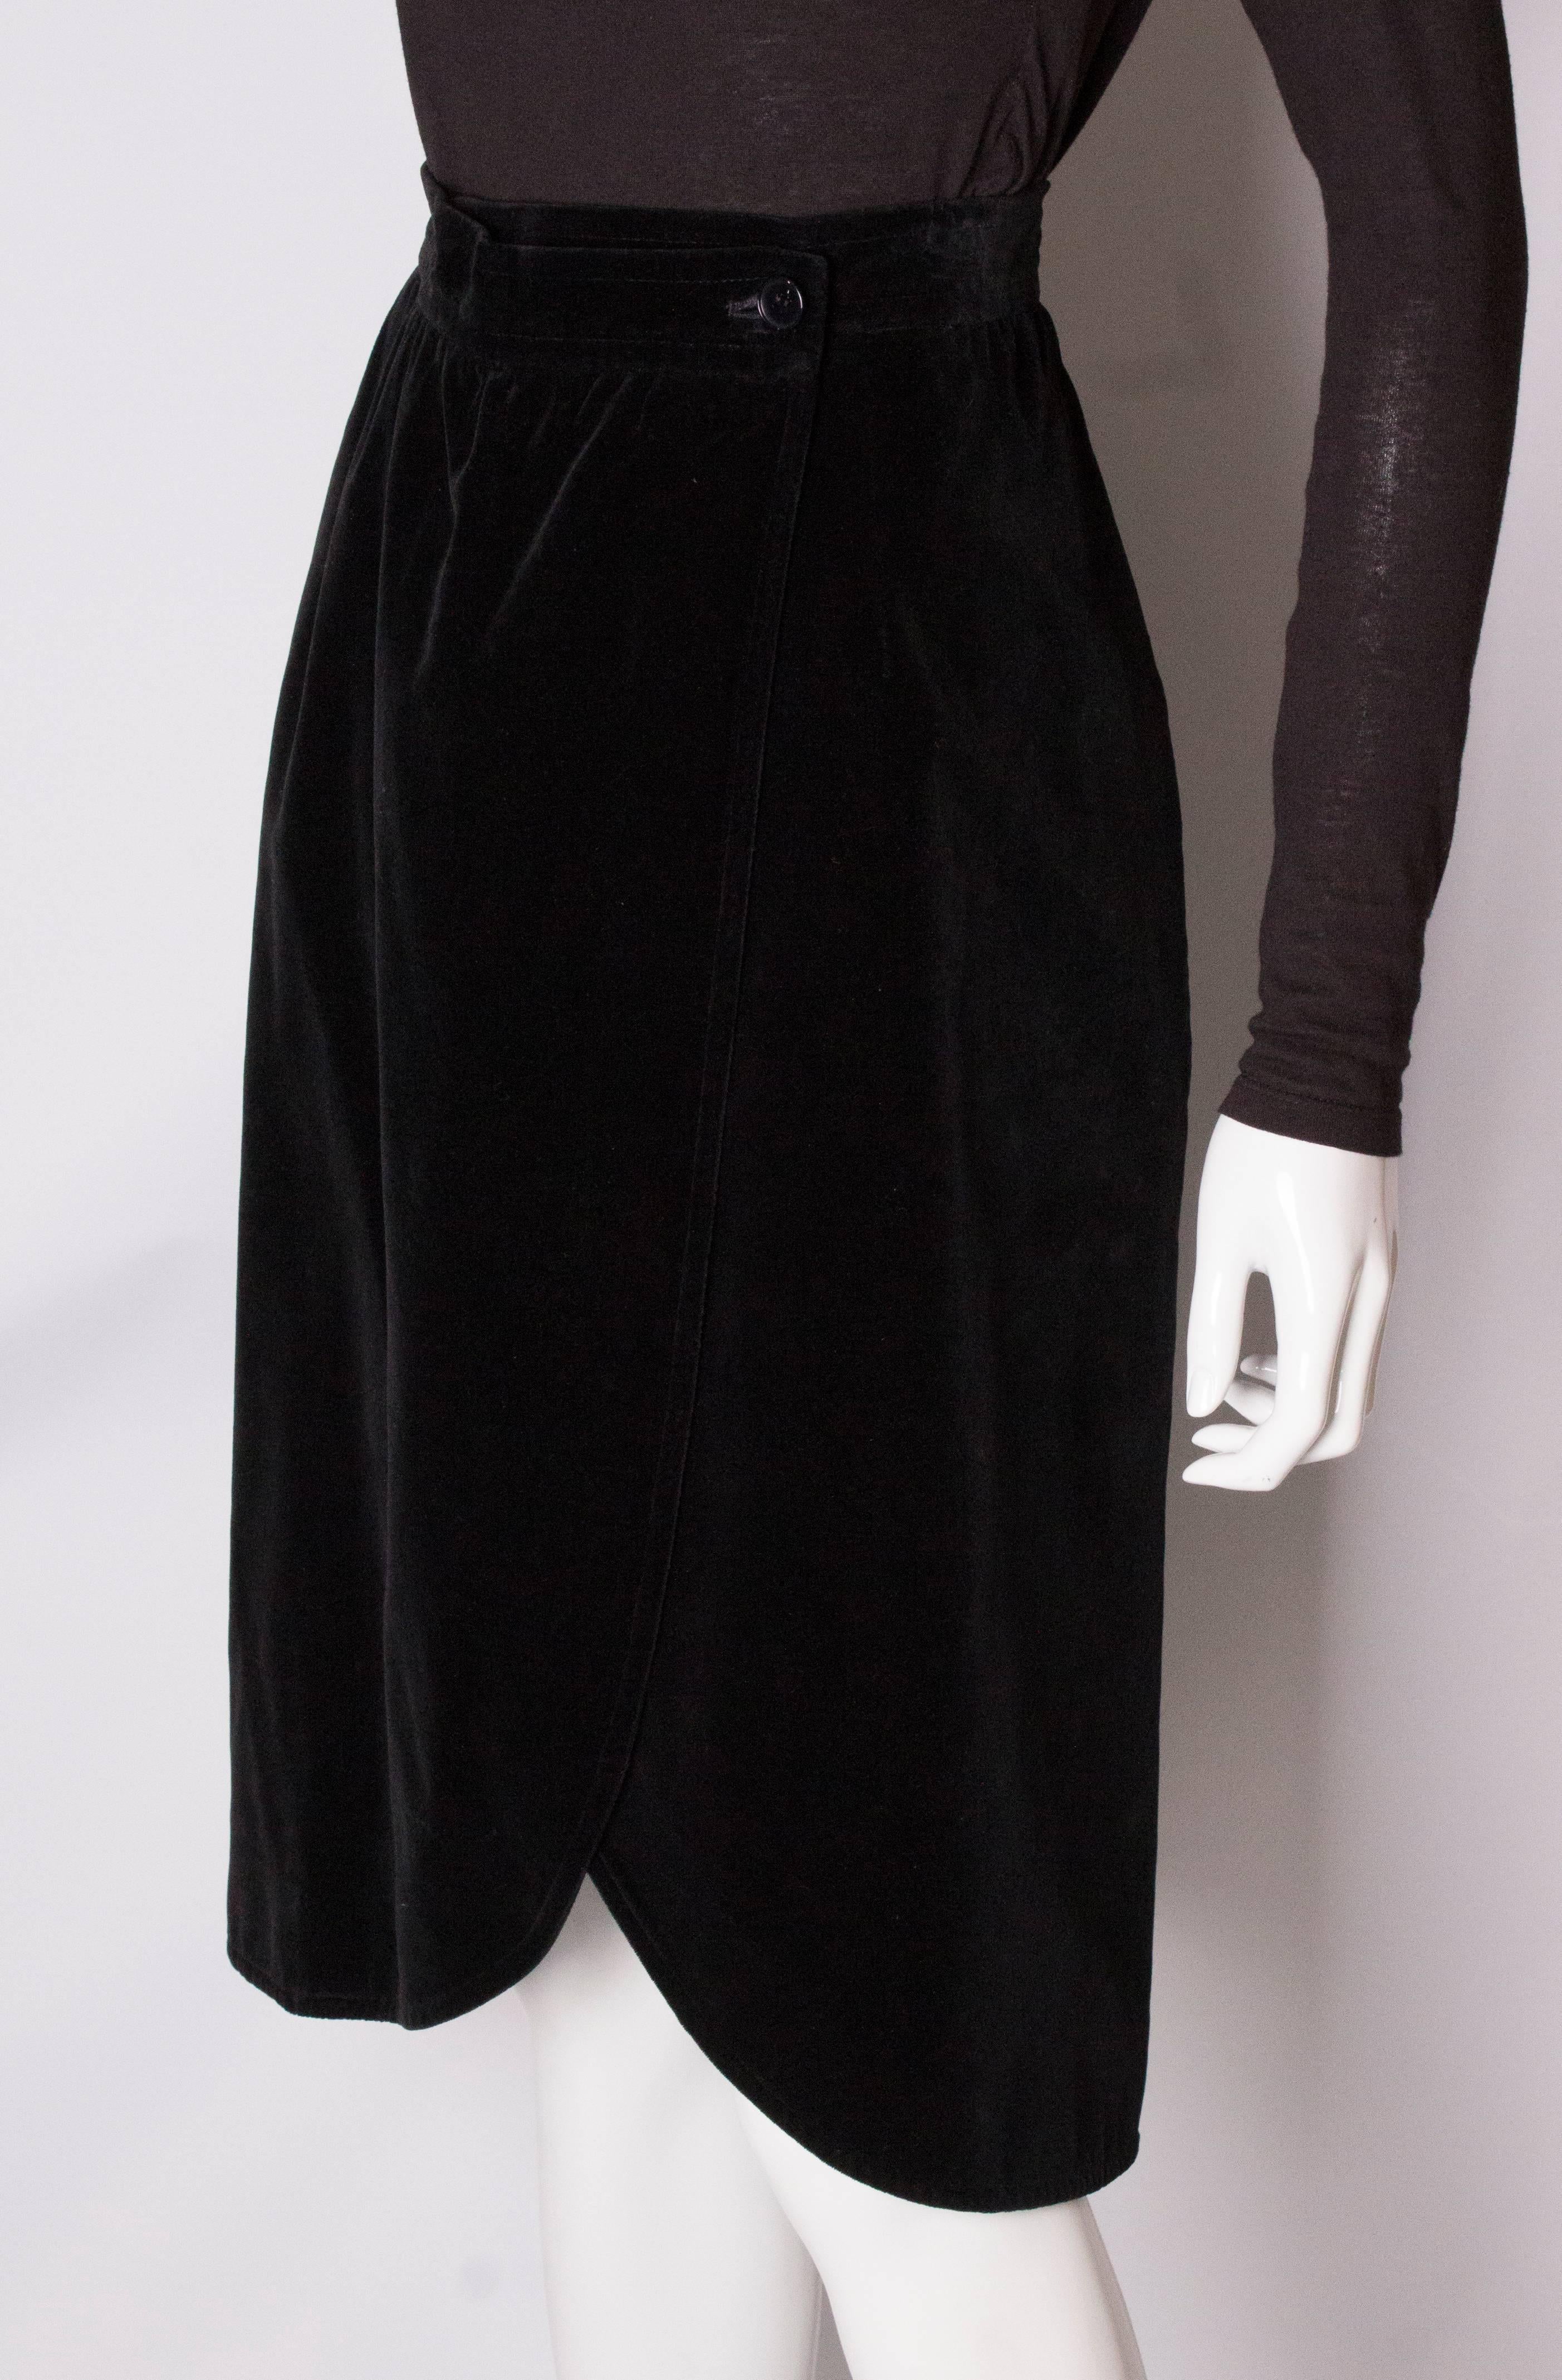 Yves Saint Laurent Vintage Velvet Skirt In Good Condition In London, GB